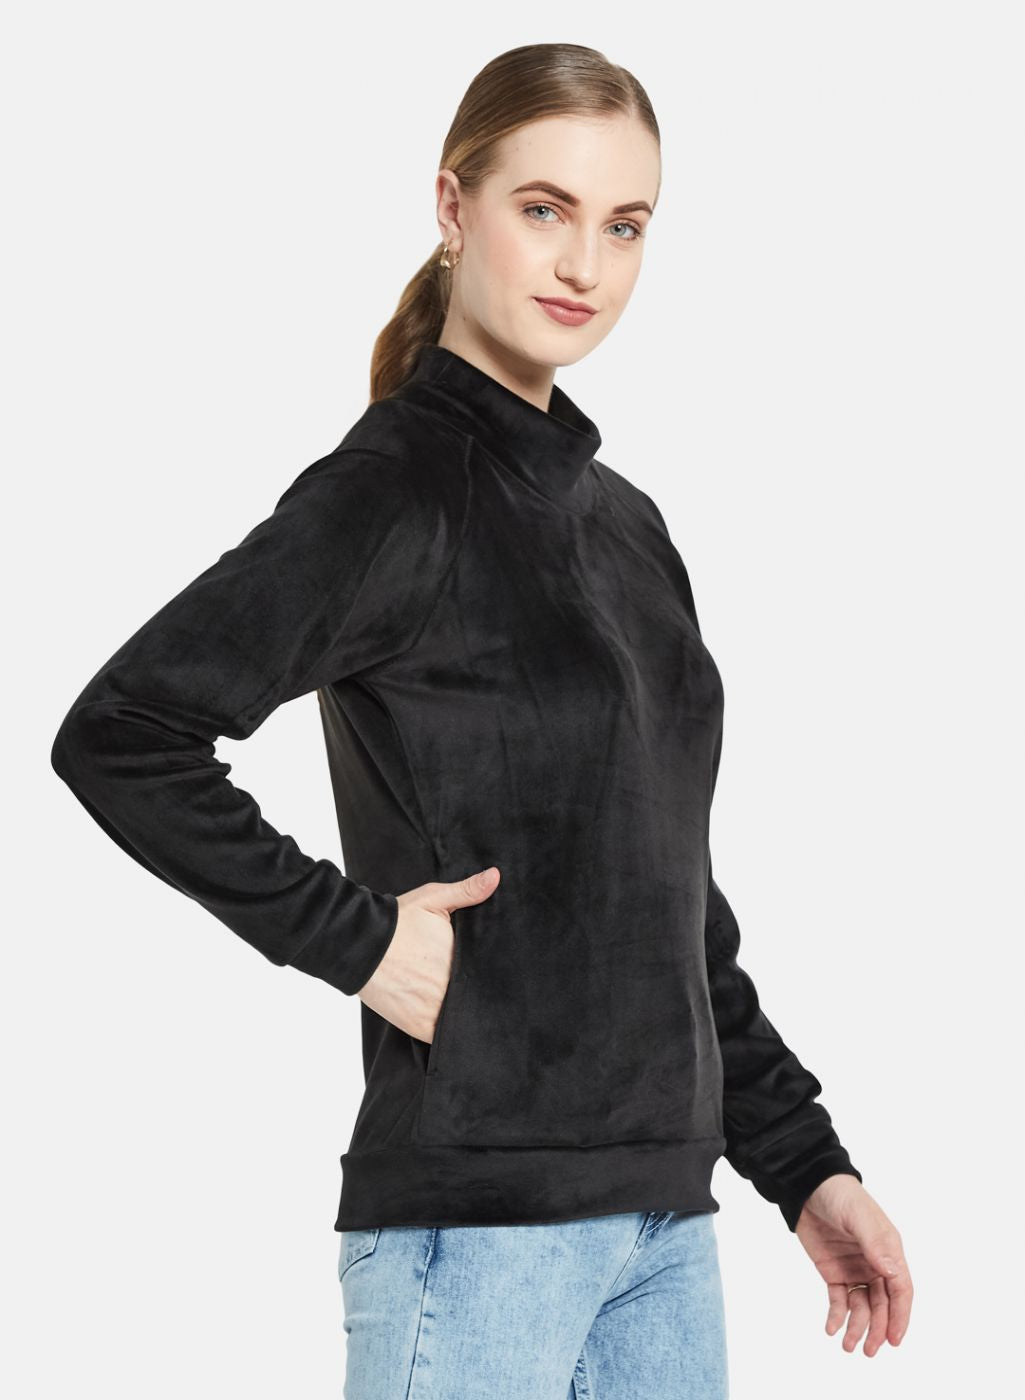 Women Black Solid Sweatshirt